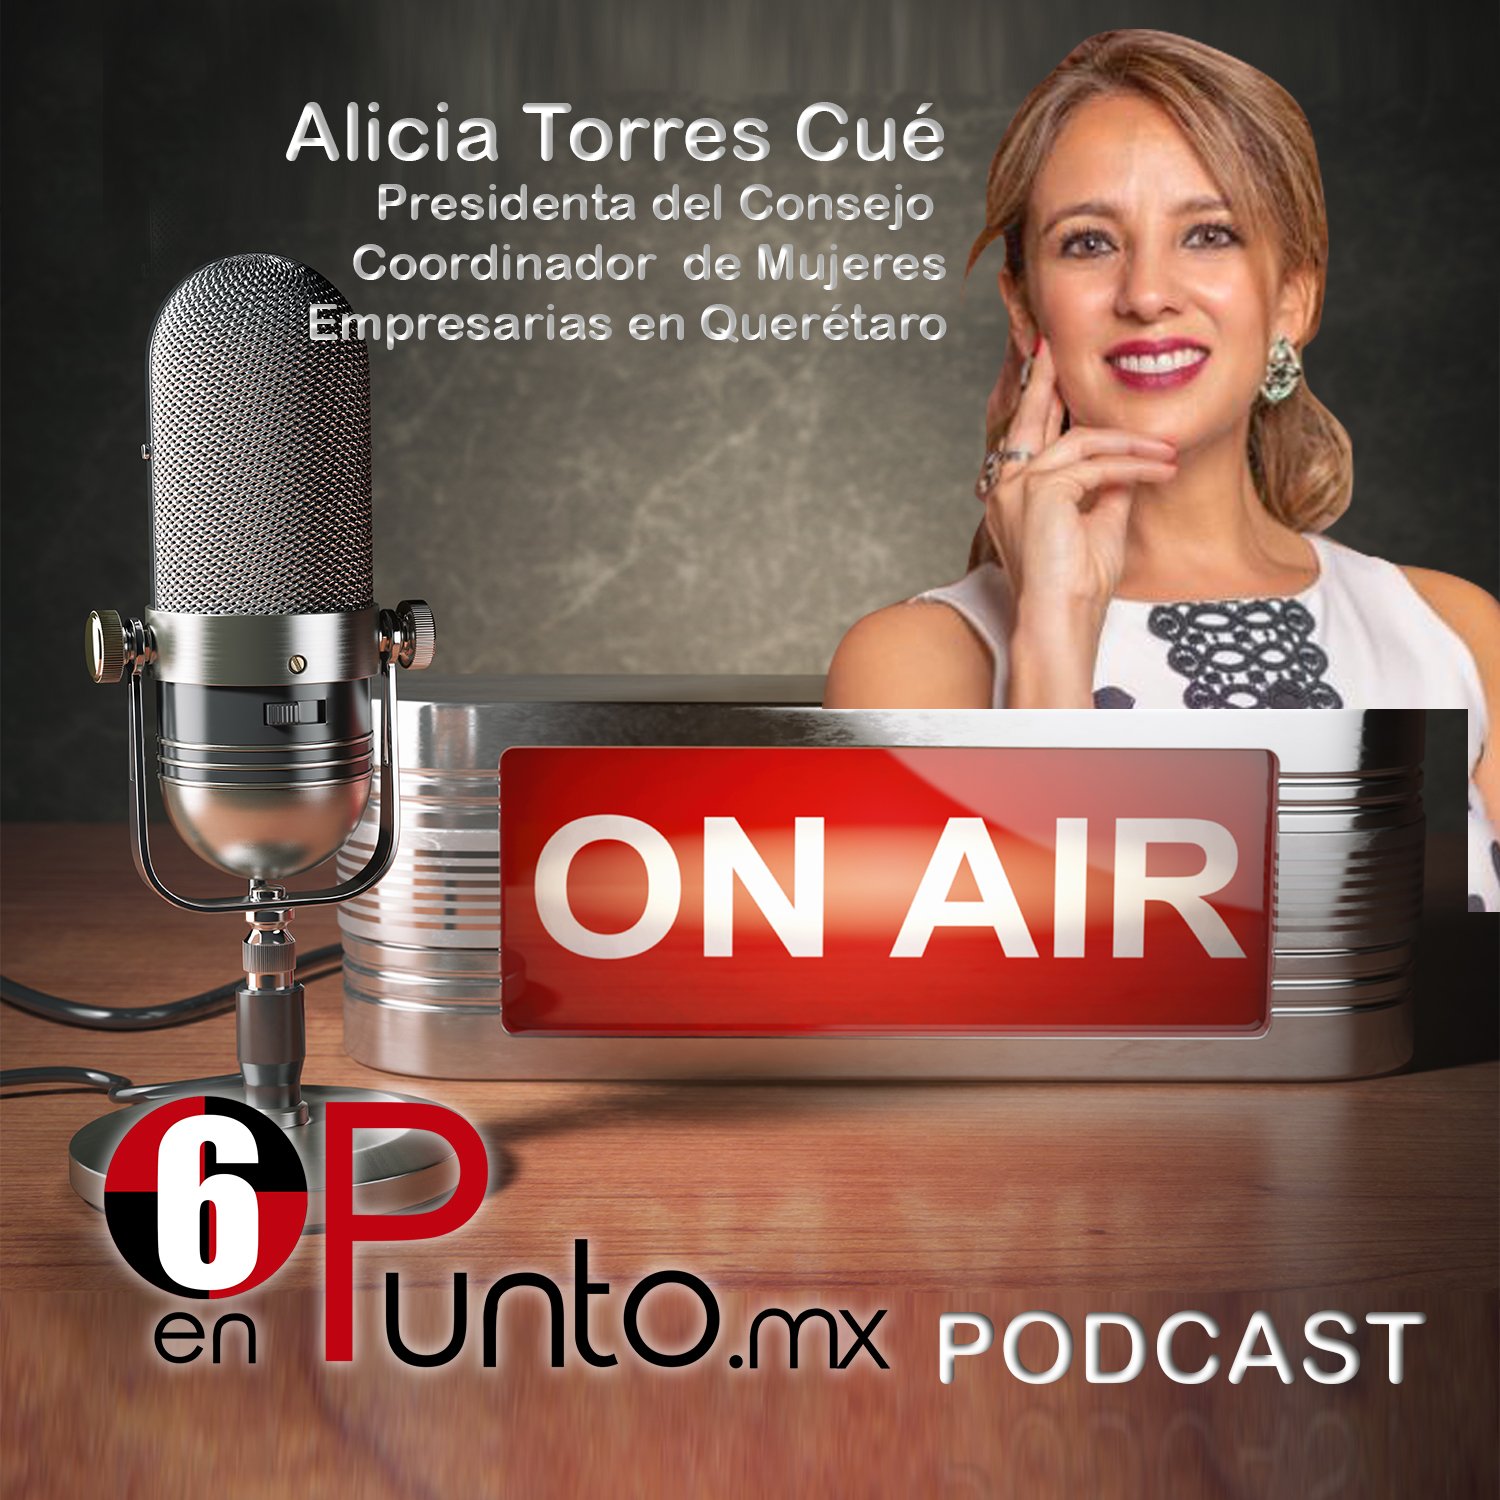 Alicia Torres Cue, presidenta del Consejo Coordinador de Mujeres Empresarias en Querétaro